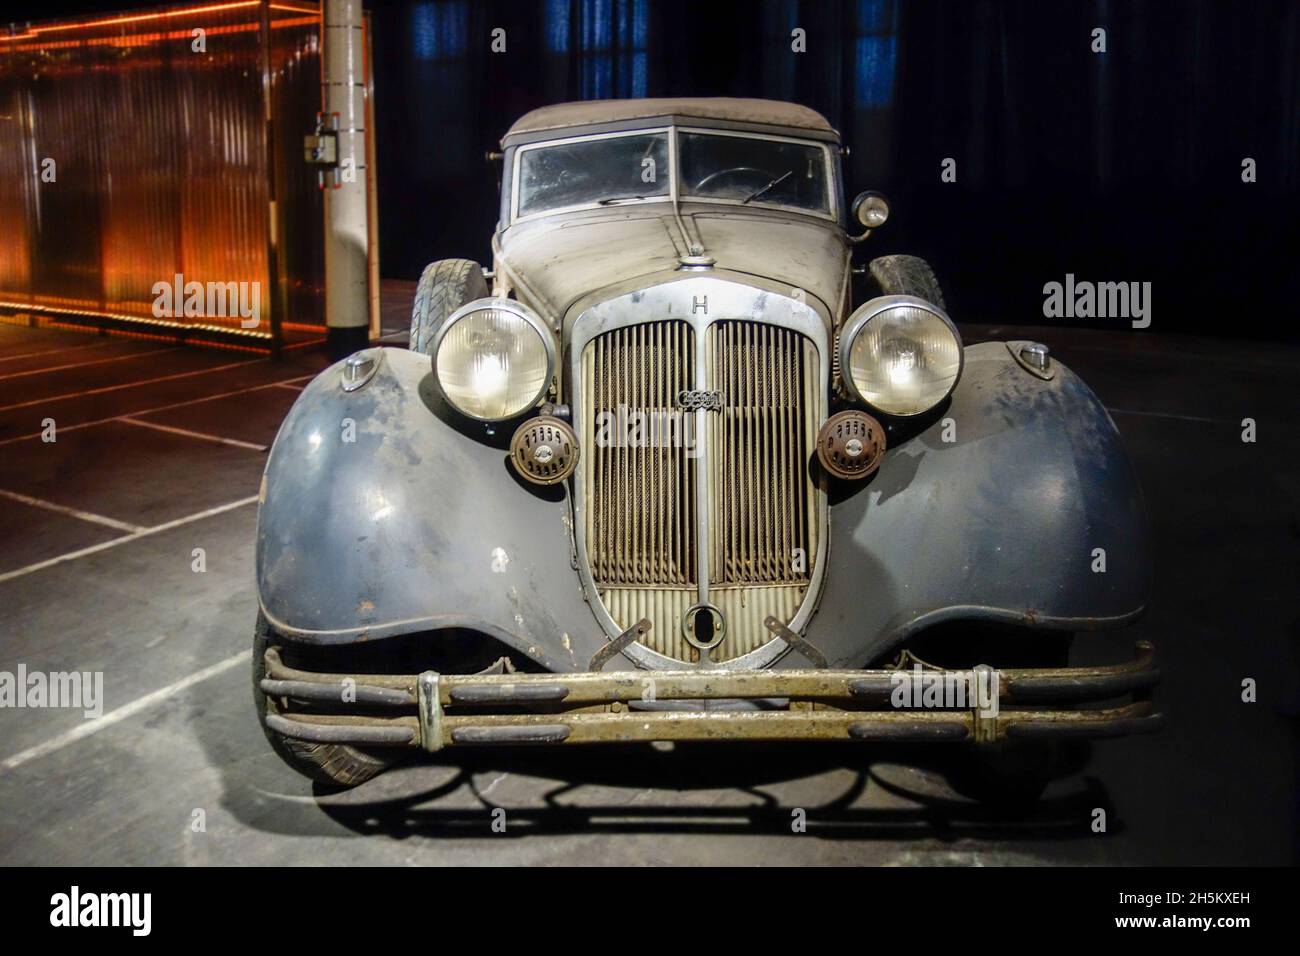 Oxidado y polvoriento 1937 Horch Typ 853, coche clásico alemán / oldtimer, en mal estado listo para ser restaurado en el garaje Foto de stock